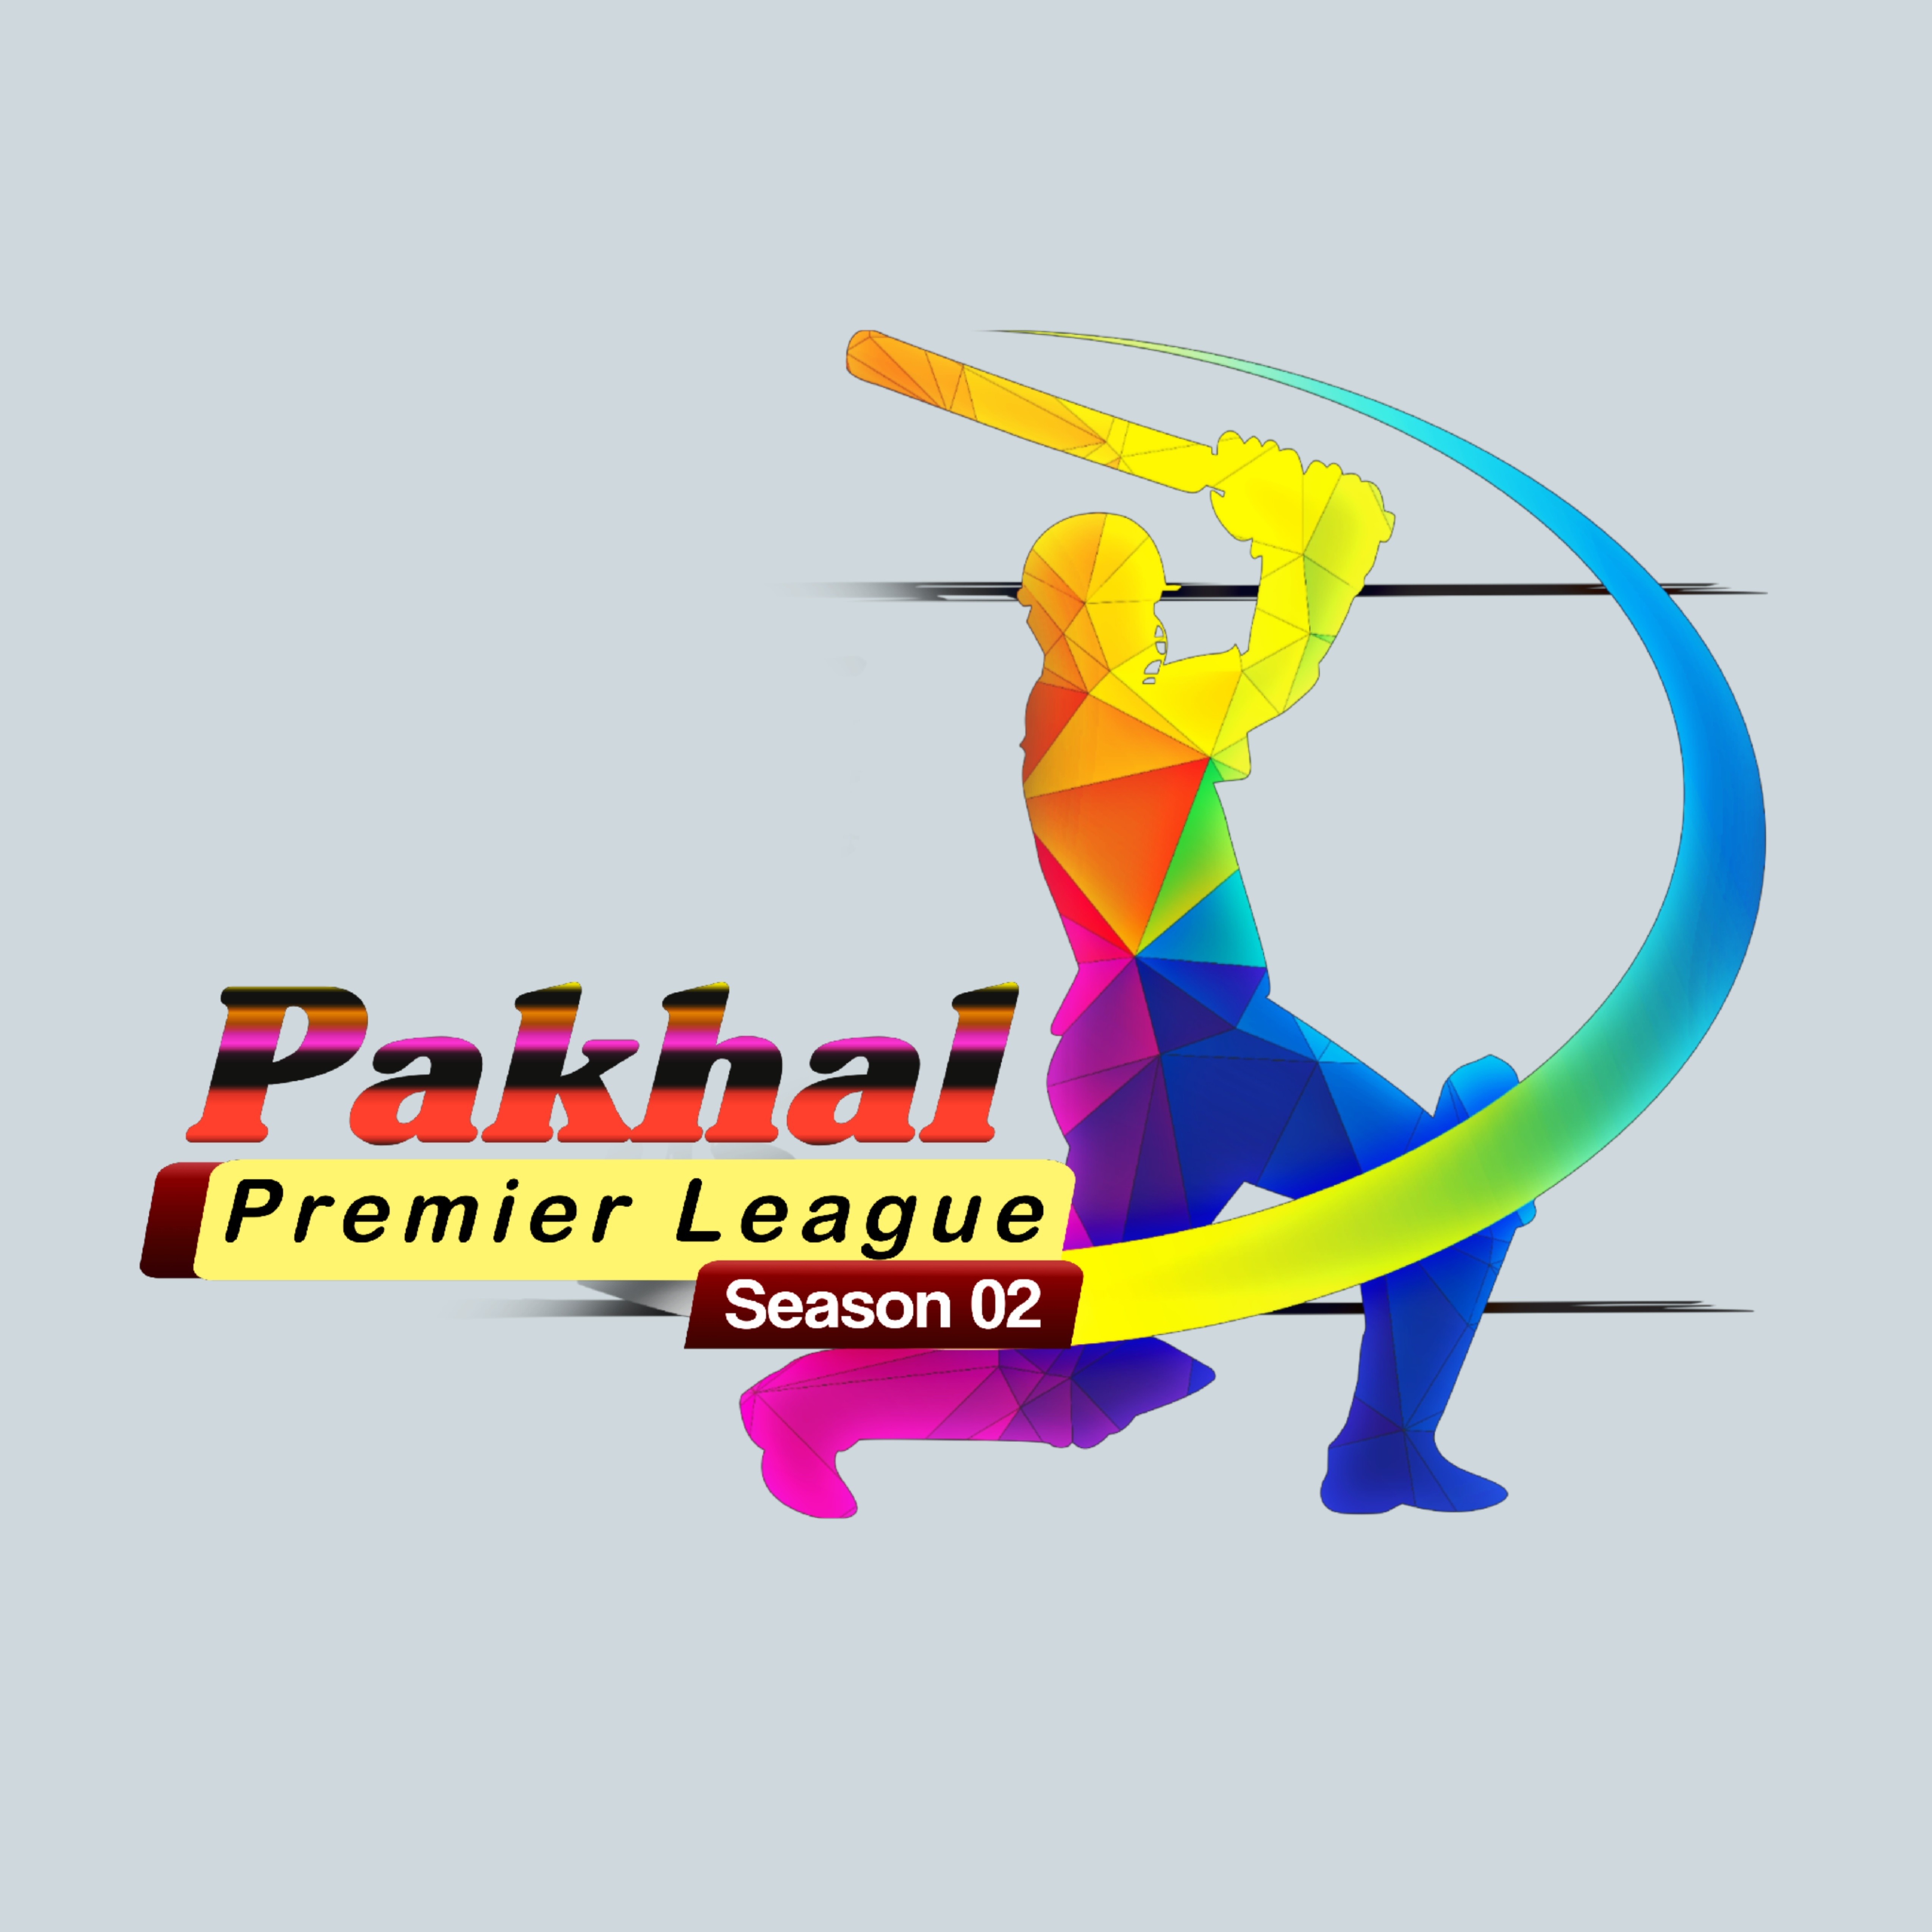 Pakhal Premier League 02